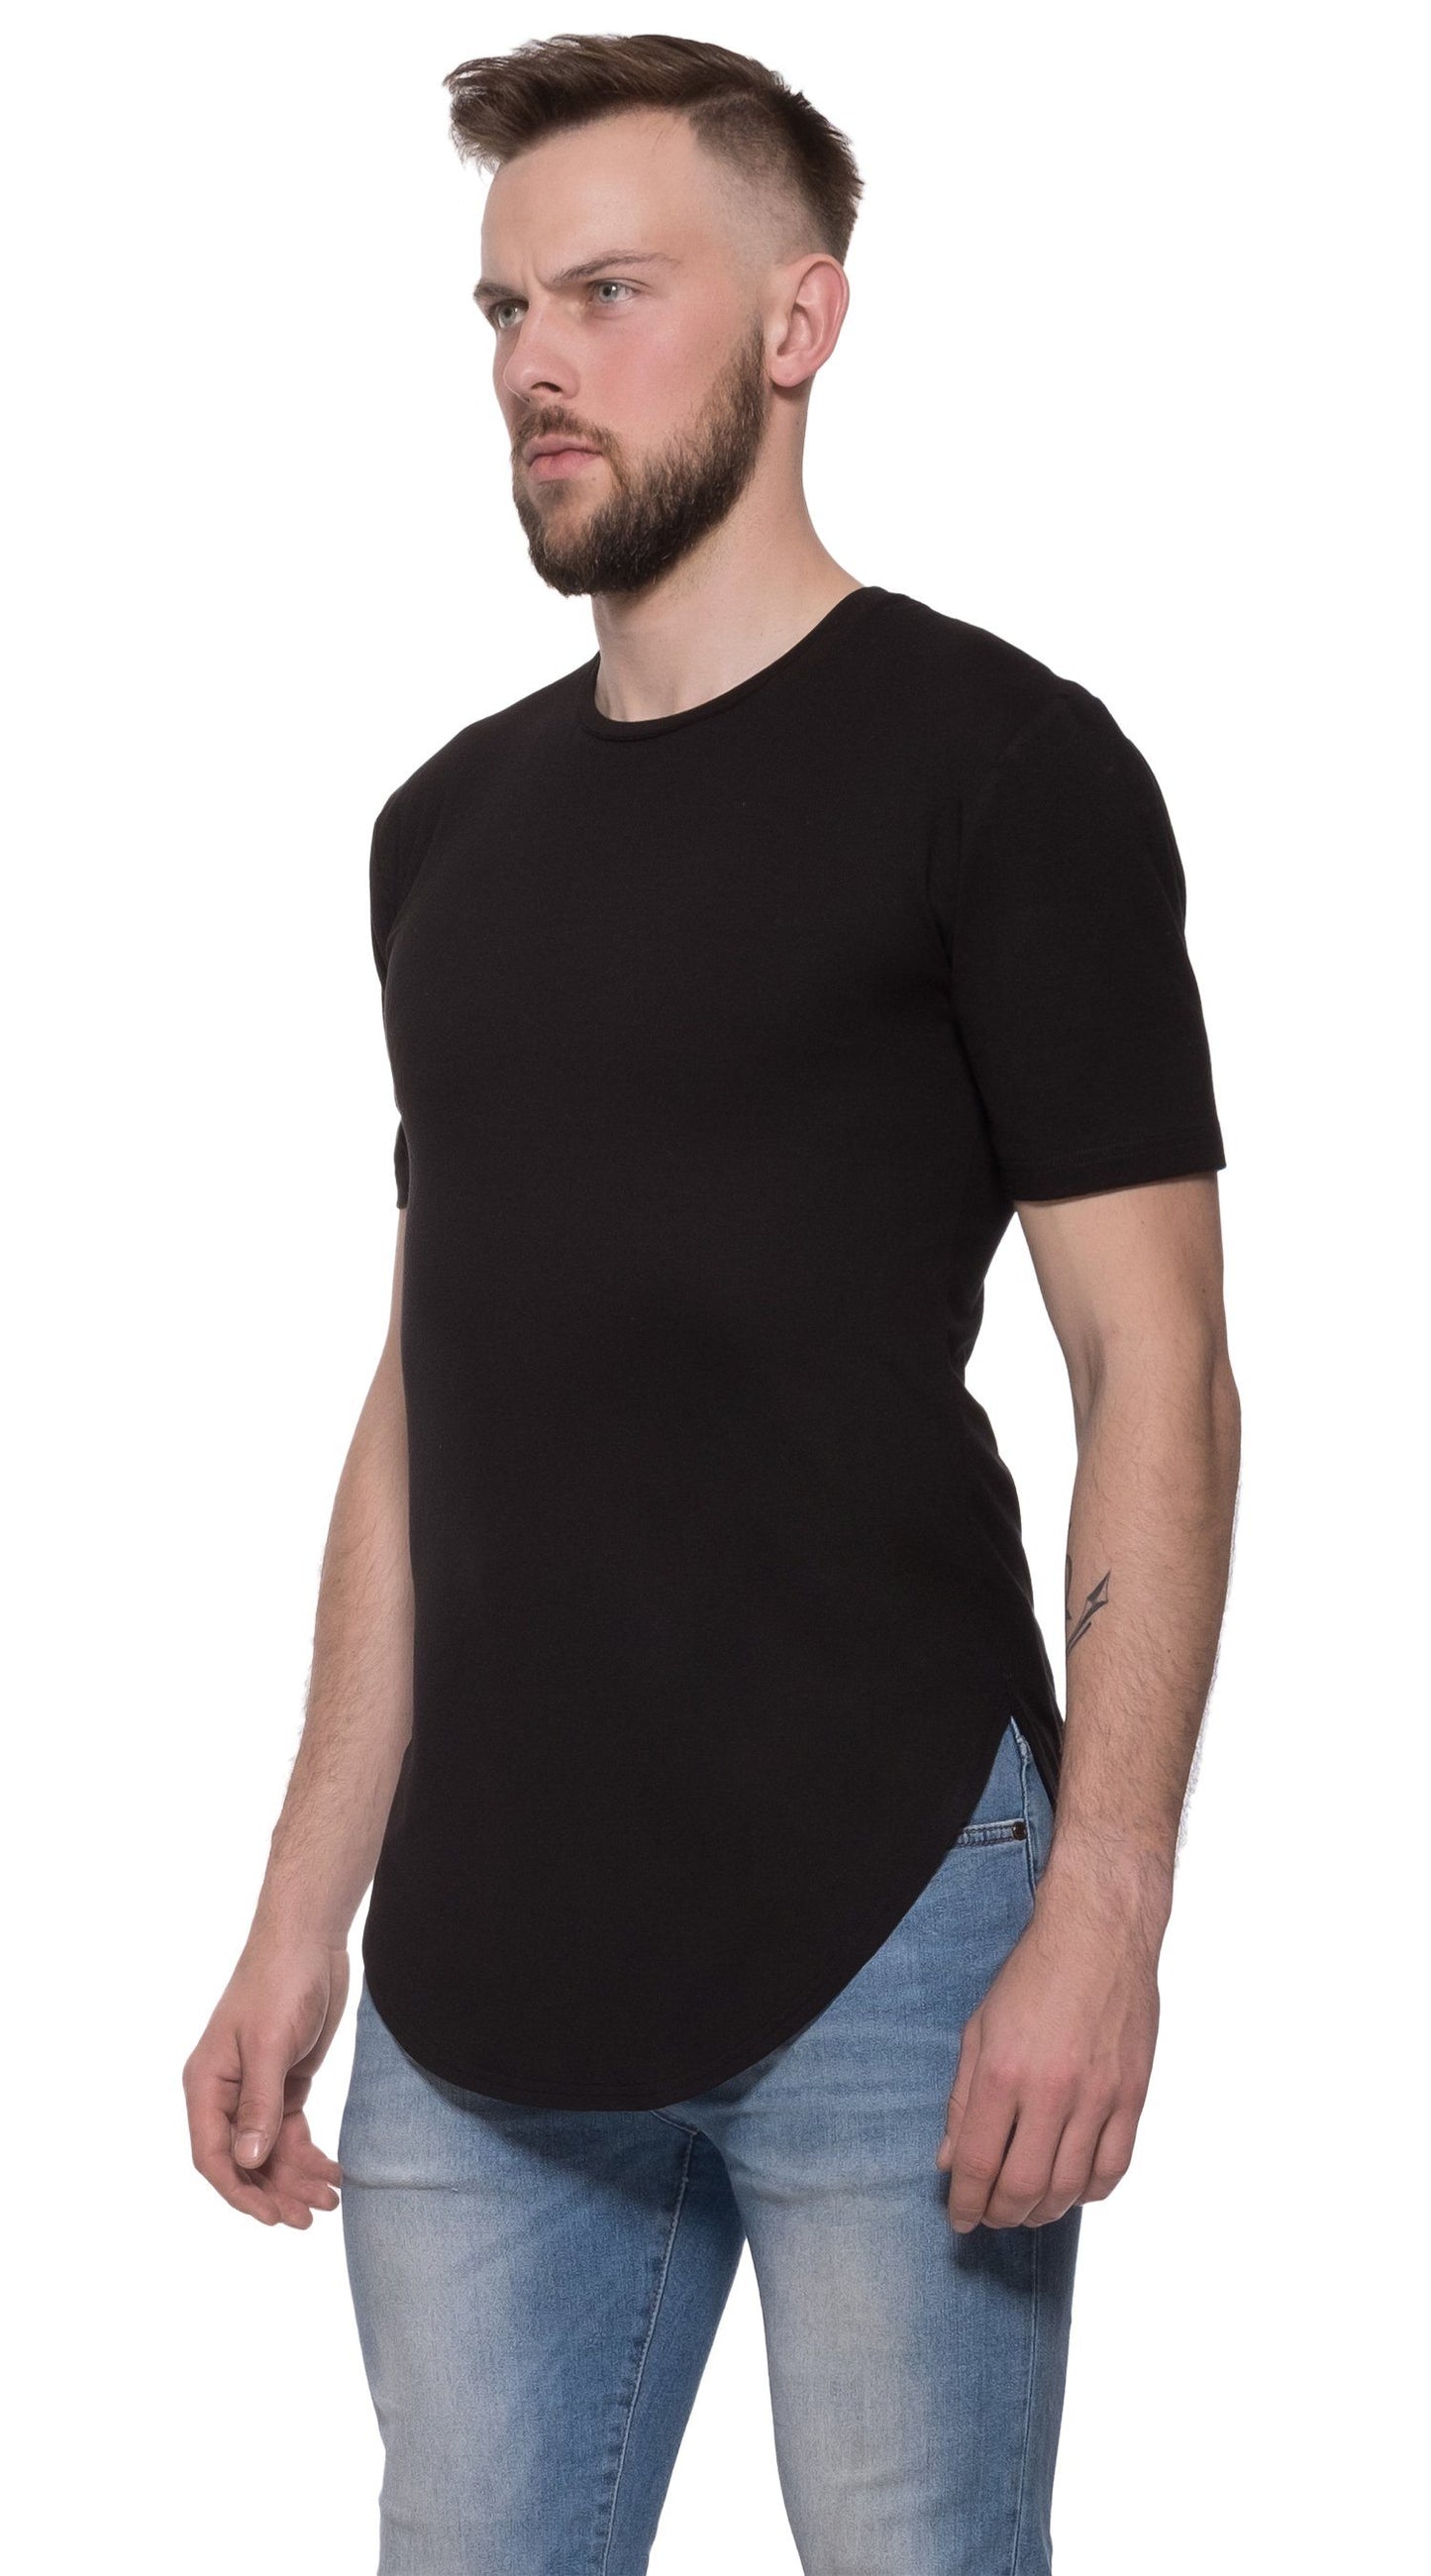 TheG Man Viscose Basic 2/2 dlouhé tričko // černé